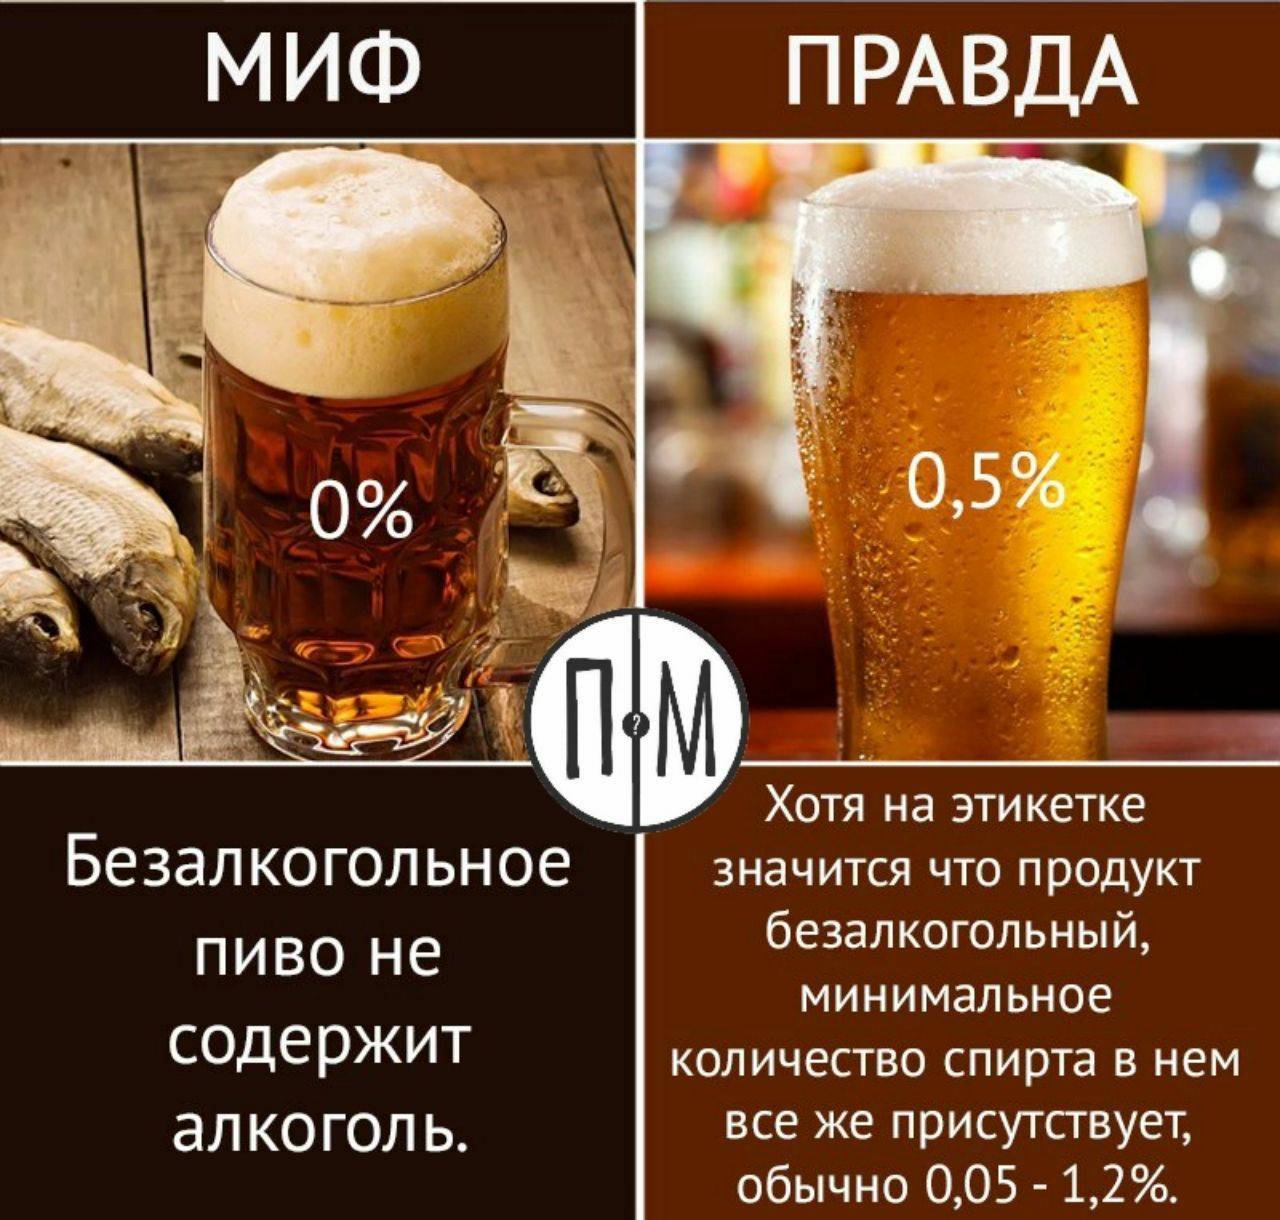 Безалкогольное пиво: польза и вред, состав, противопоказания к употреблению